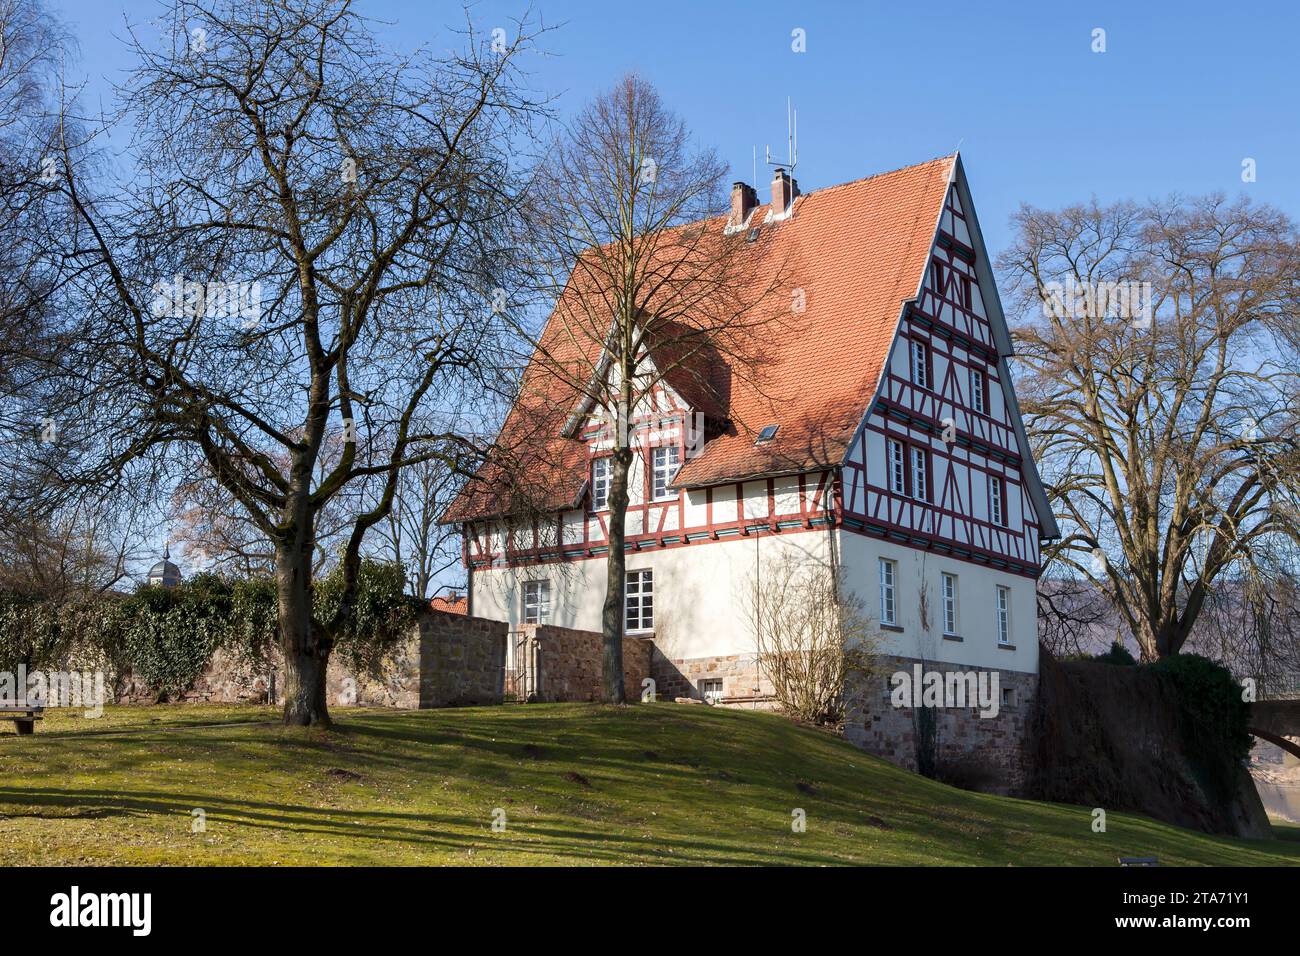 Ehemaliges Rathaus von Gieselwerder, Wesertal, Landkreis Kassel, Hessen, Deutschland Stockfoto